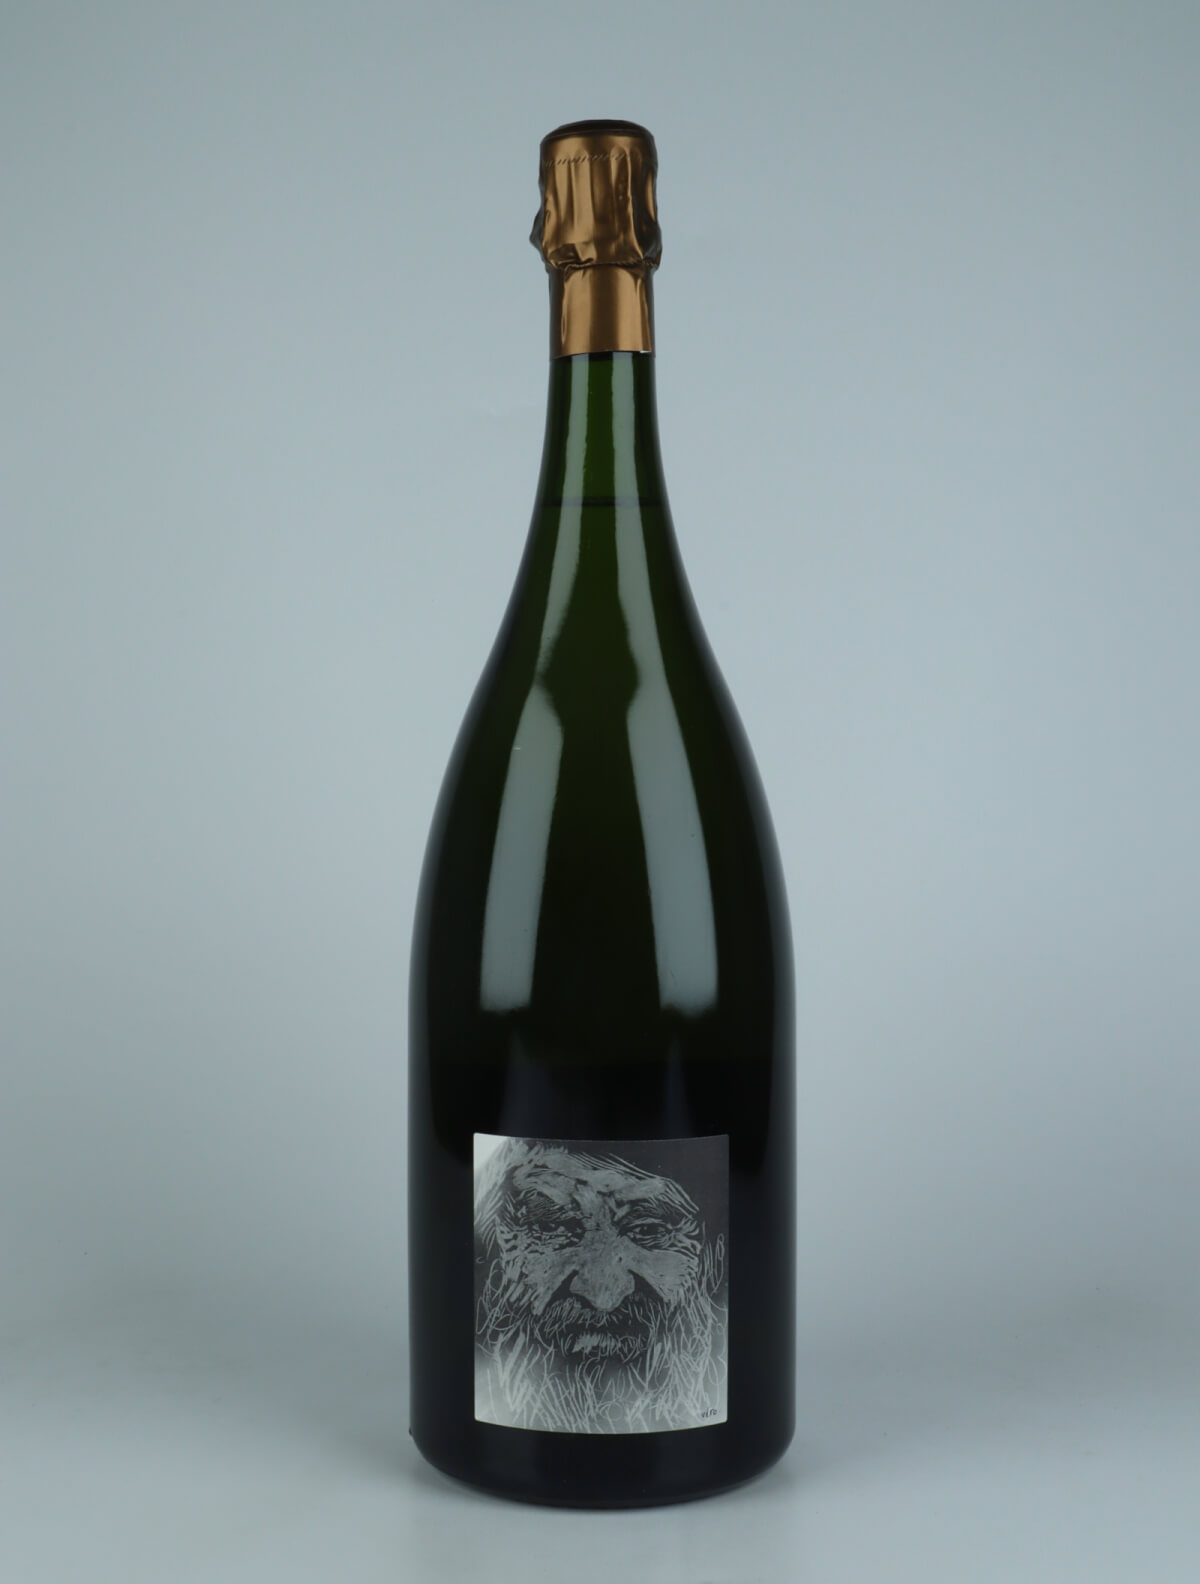 En flaske 2017 Heraclite - Pinot Noir - Brut Nature - Magnum Mousserende fra Stroebel, Champagne i Frankrig